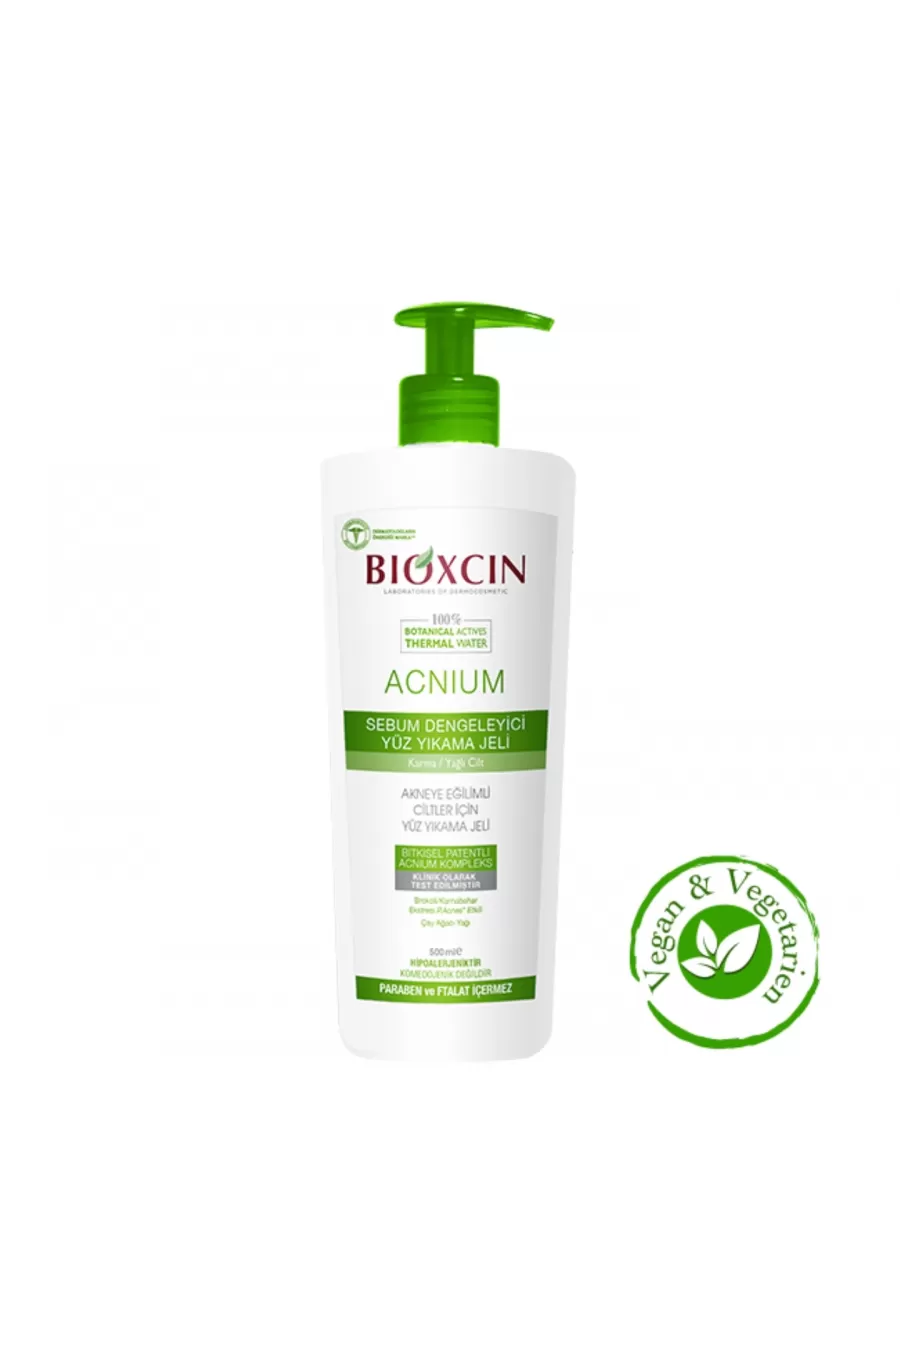 مخصوص پوست های چرب و جوش دار و مختلط ۴۰۰ میل بیوکسین BIOXCIN ژل شست و شوی صورت درخت چای